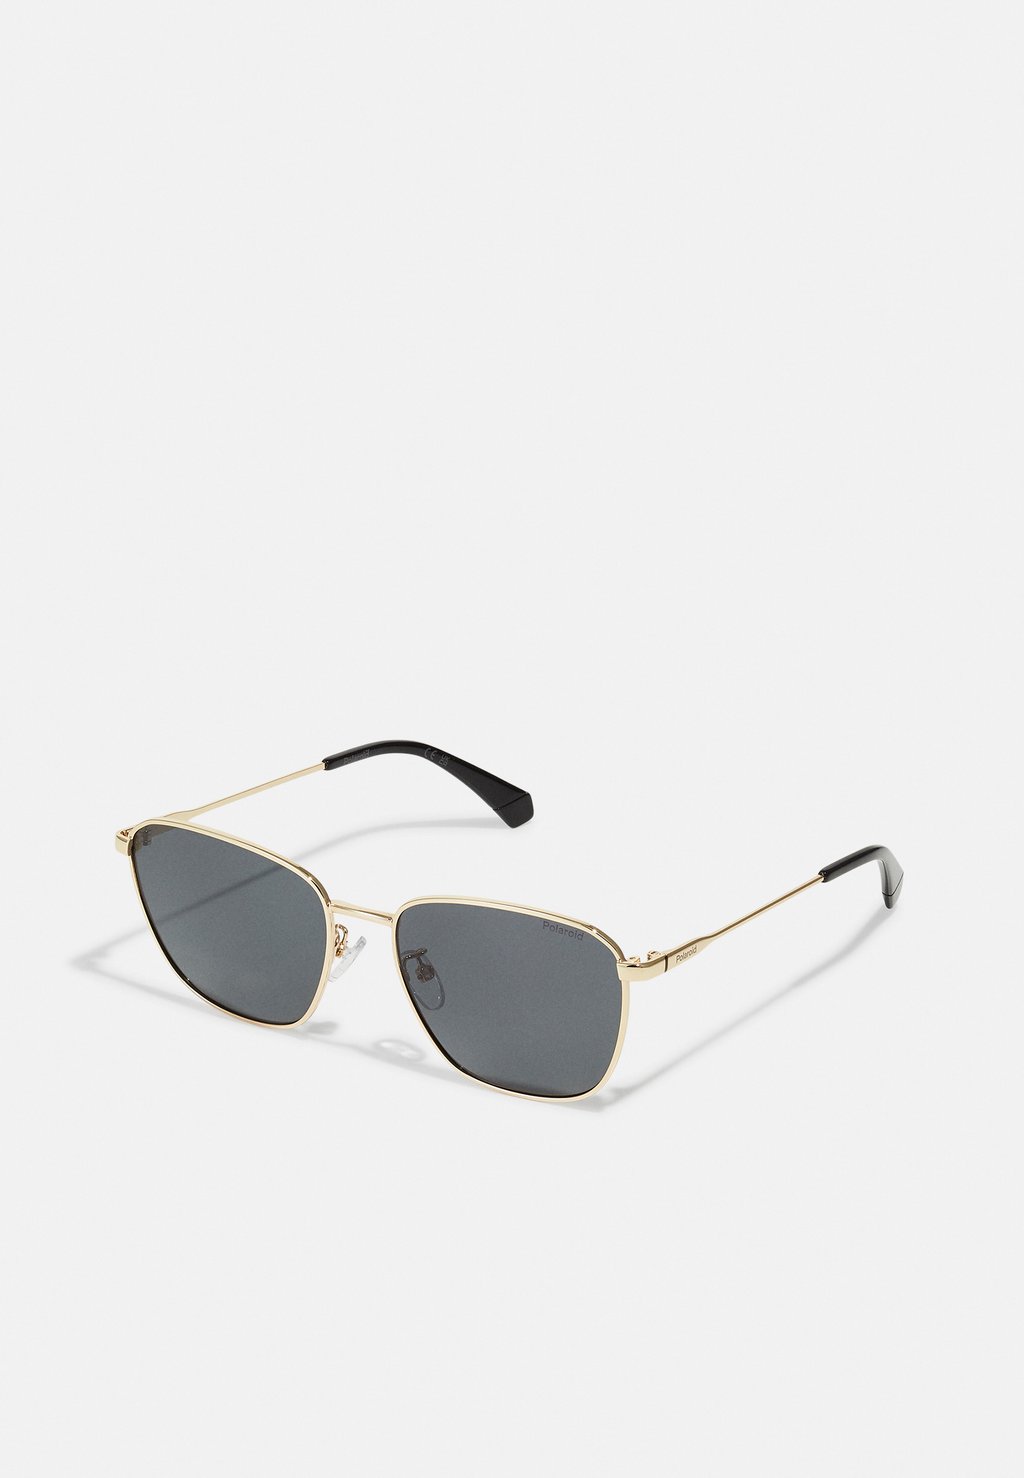 Солнцезащитные очки Unisex Polaroid, золотой